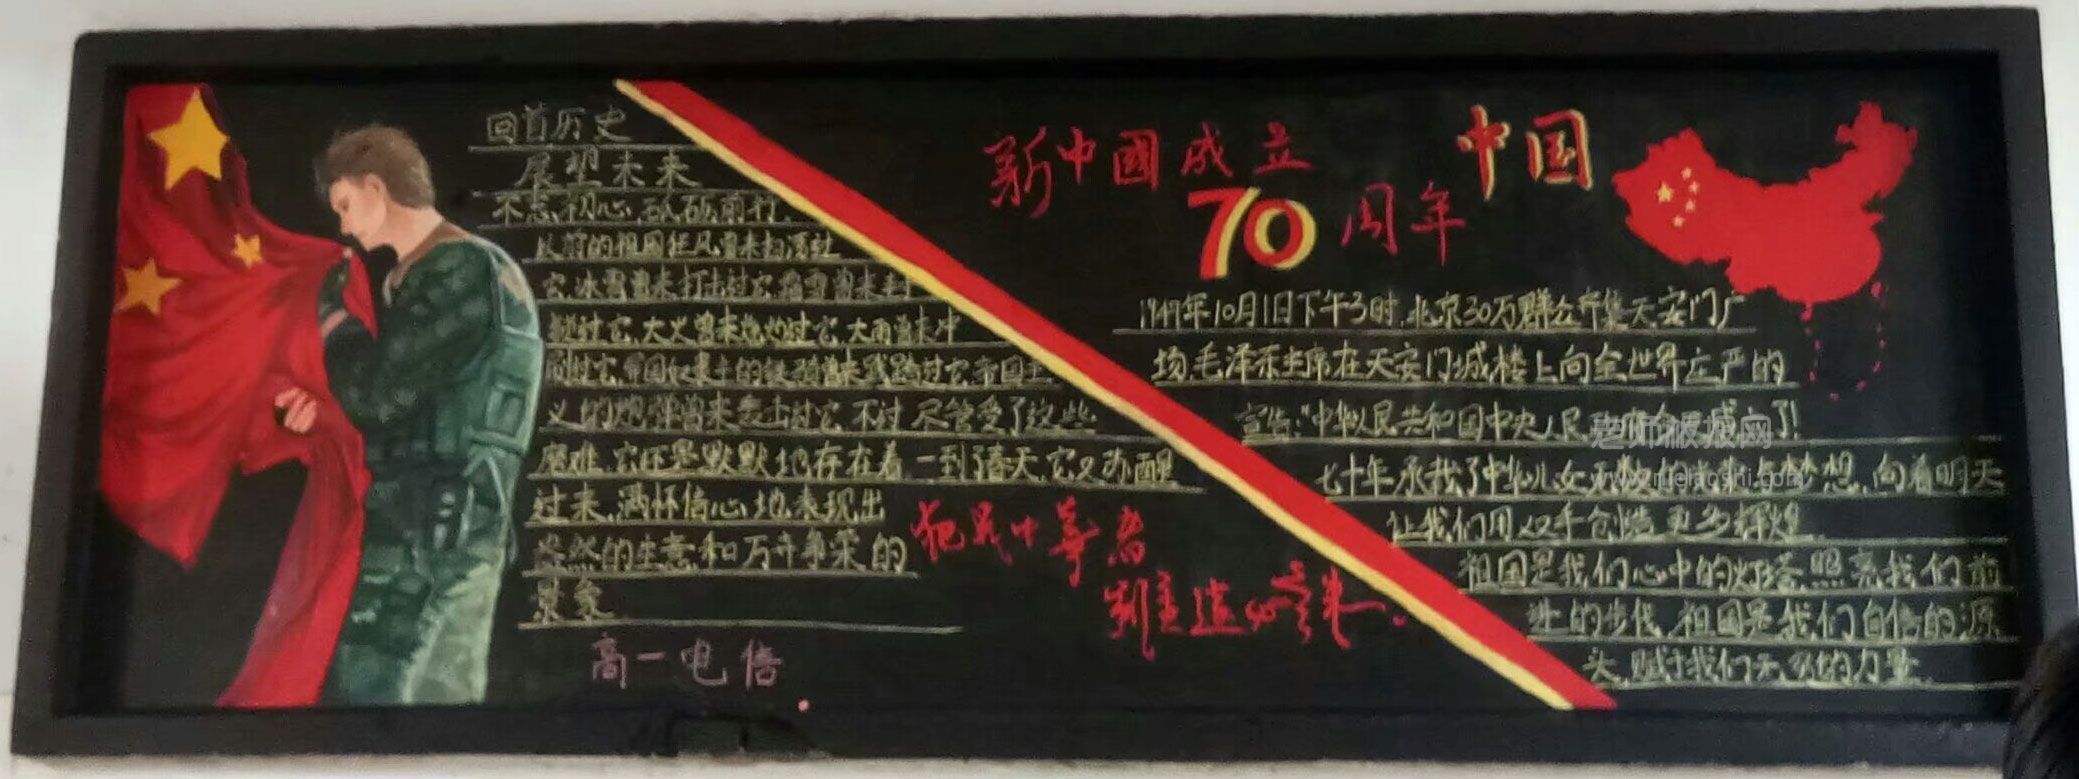 新中国成立70周年黑板报图片